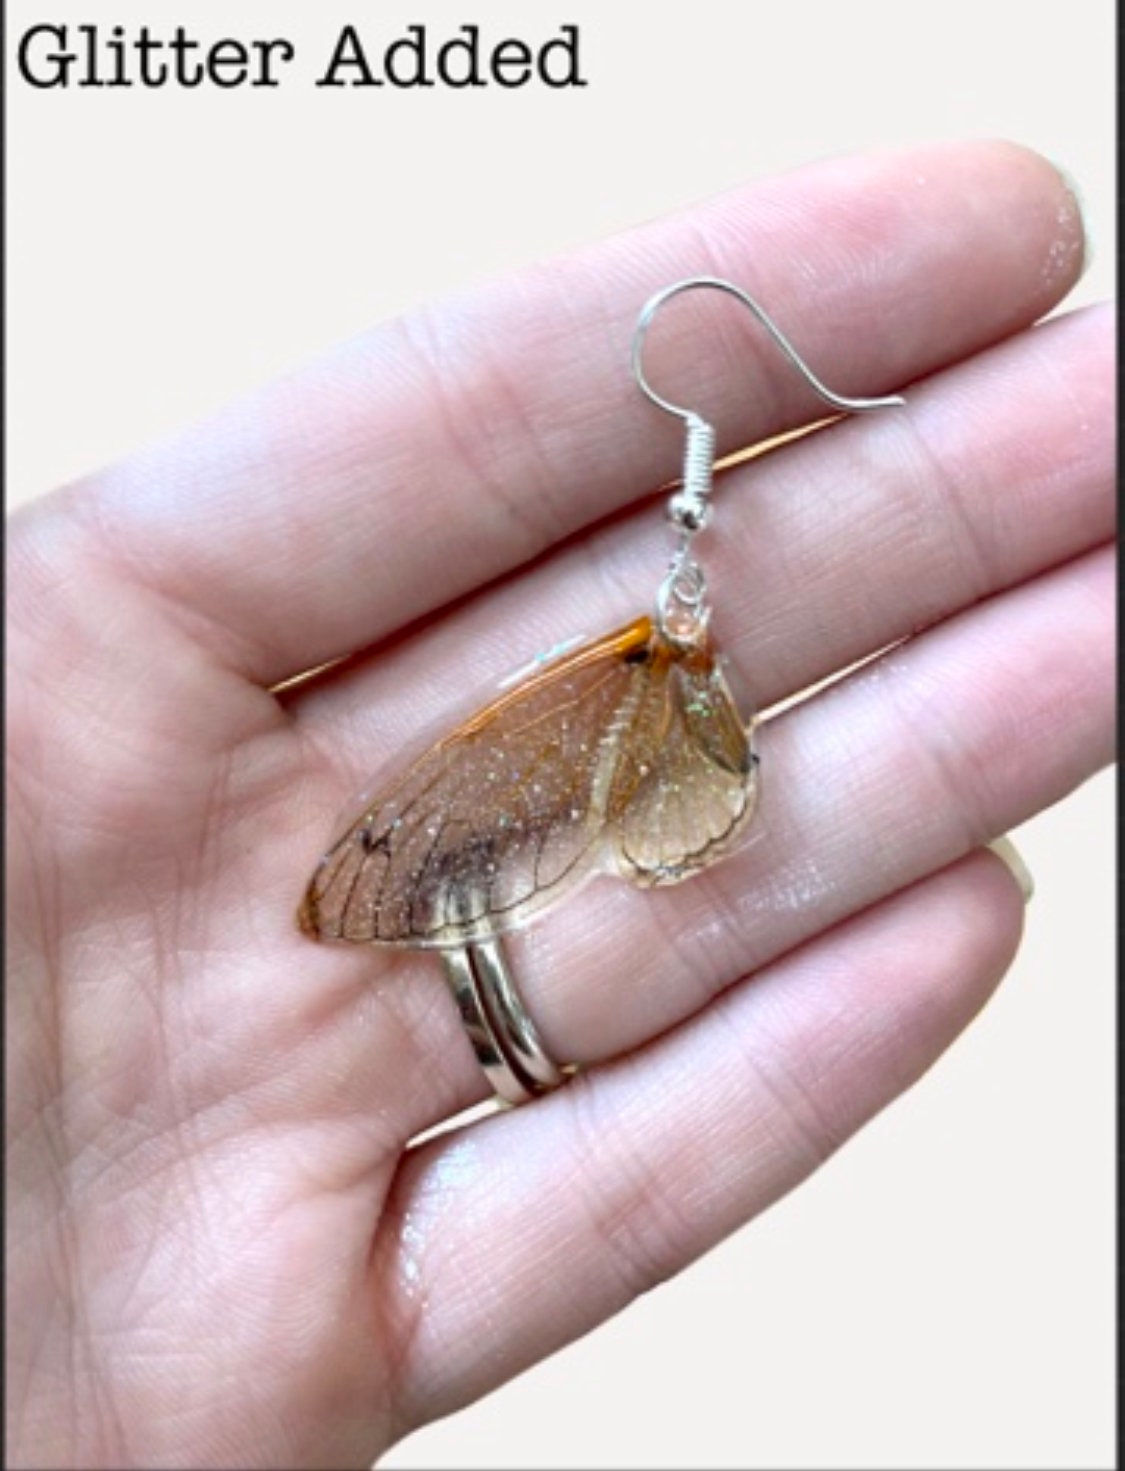 Cicada Wing Earrings Shrink Plastic Earrings Hypoallergenic 